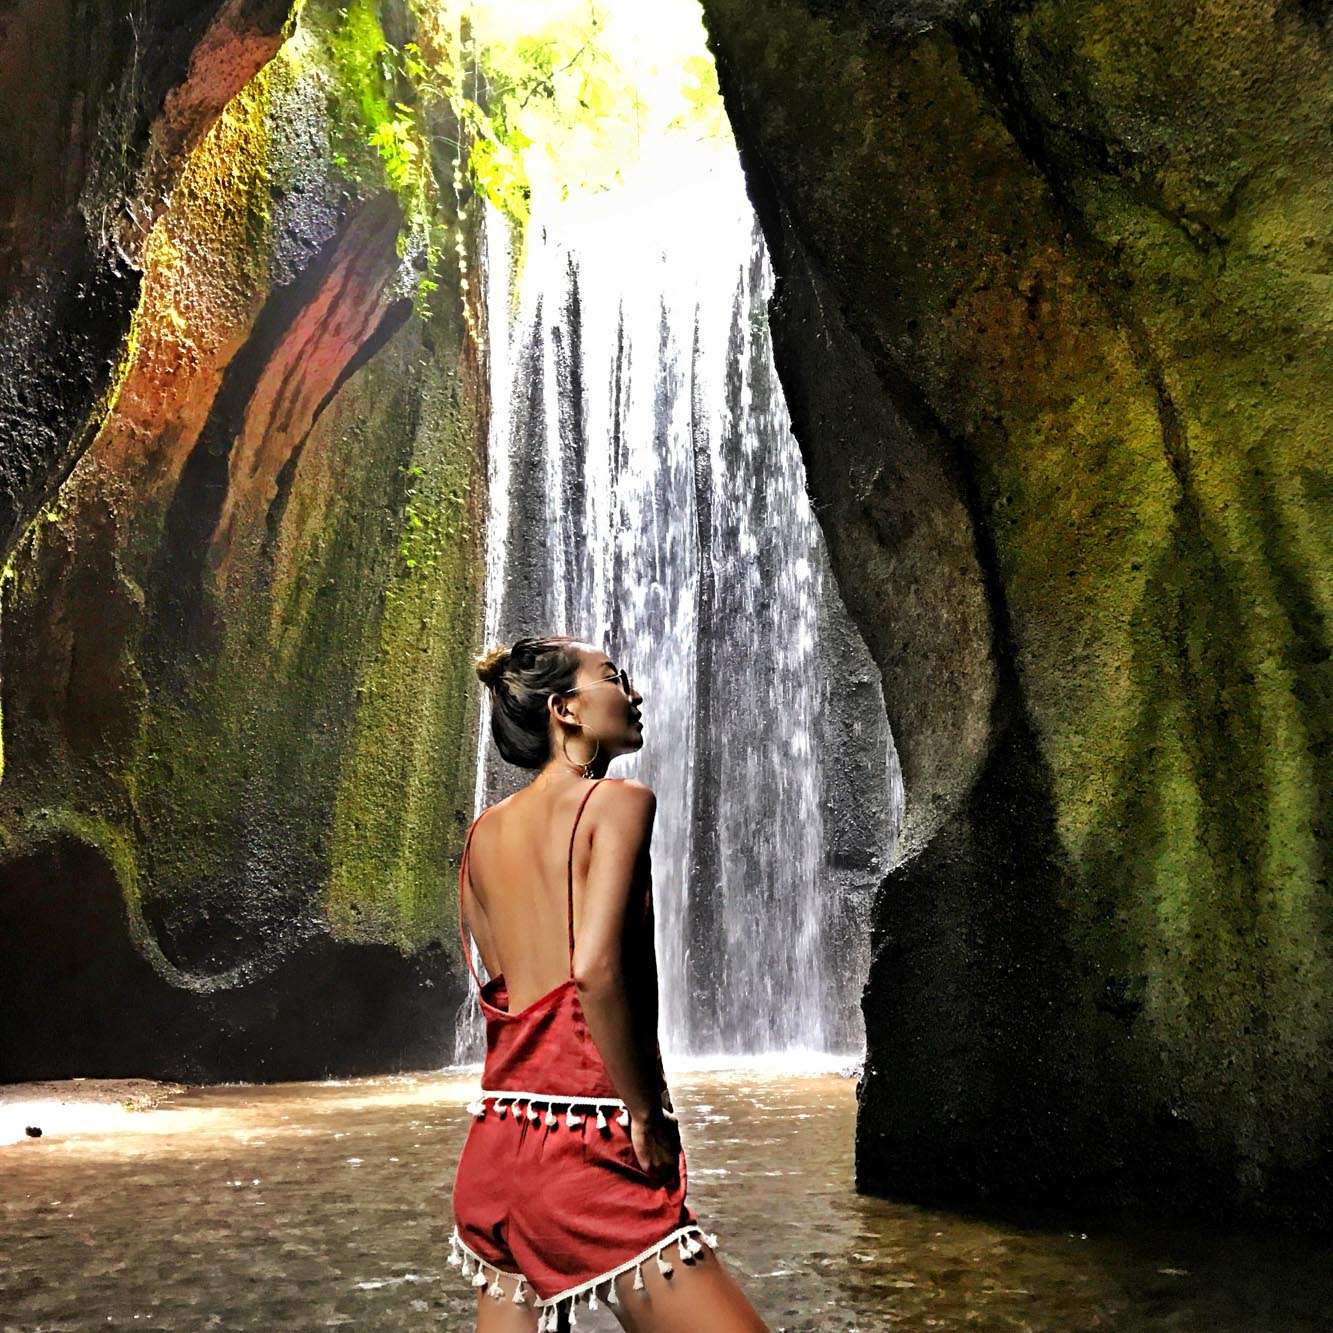 Best Waterfalls in Bali - Tukud Cepung